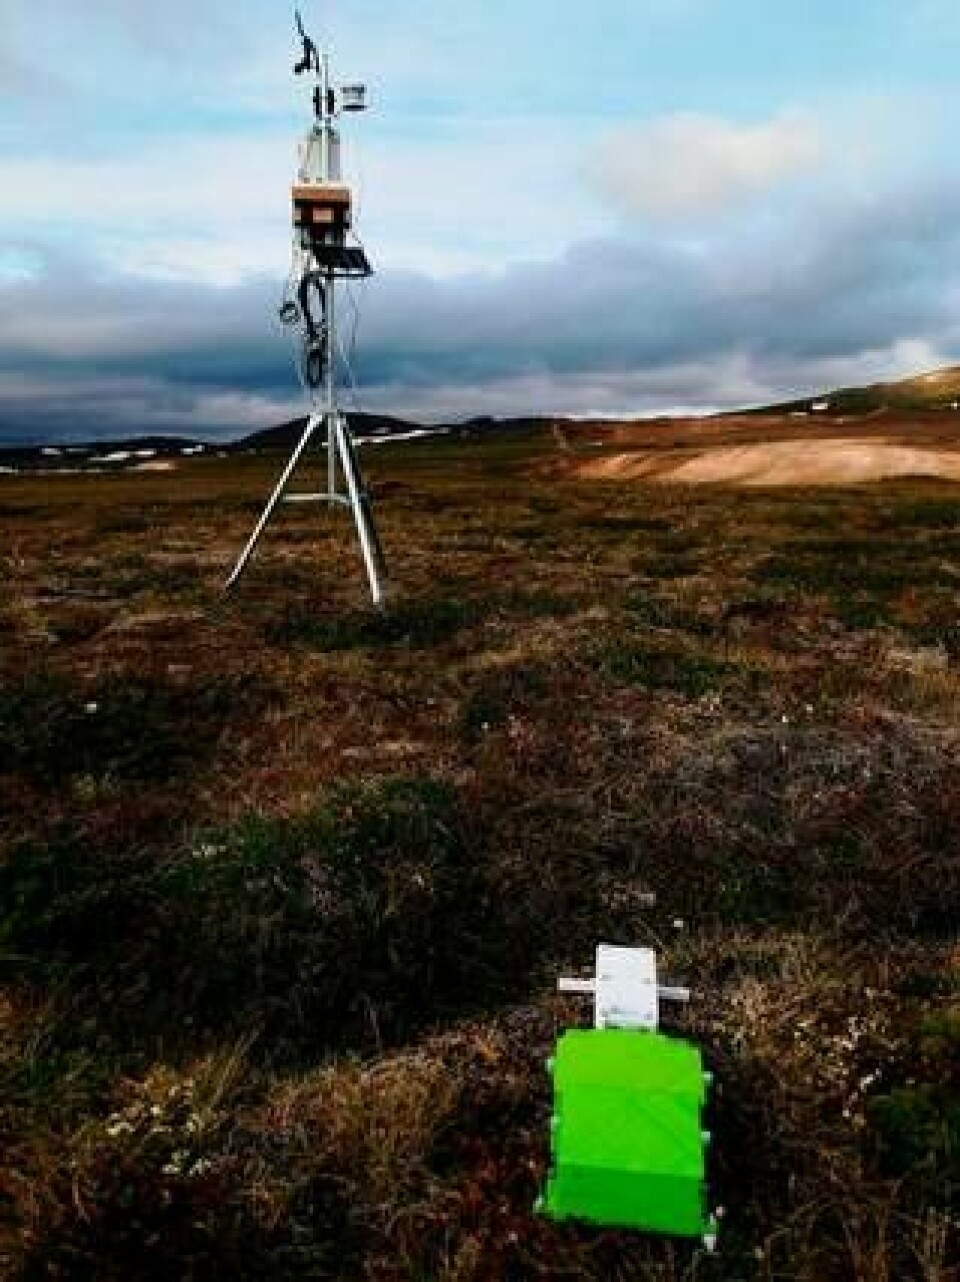 Habit har tidigare testats i Abisko och på Island, där den här bilden togs. I bakgrunden syns en meteorologisk station som användes för att säkerställa Habits mätdata.